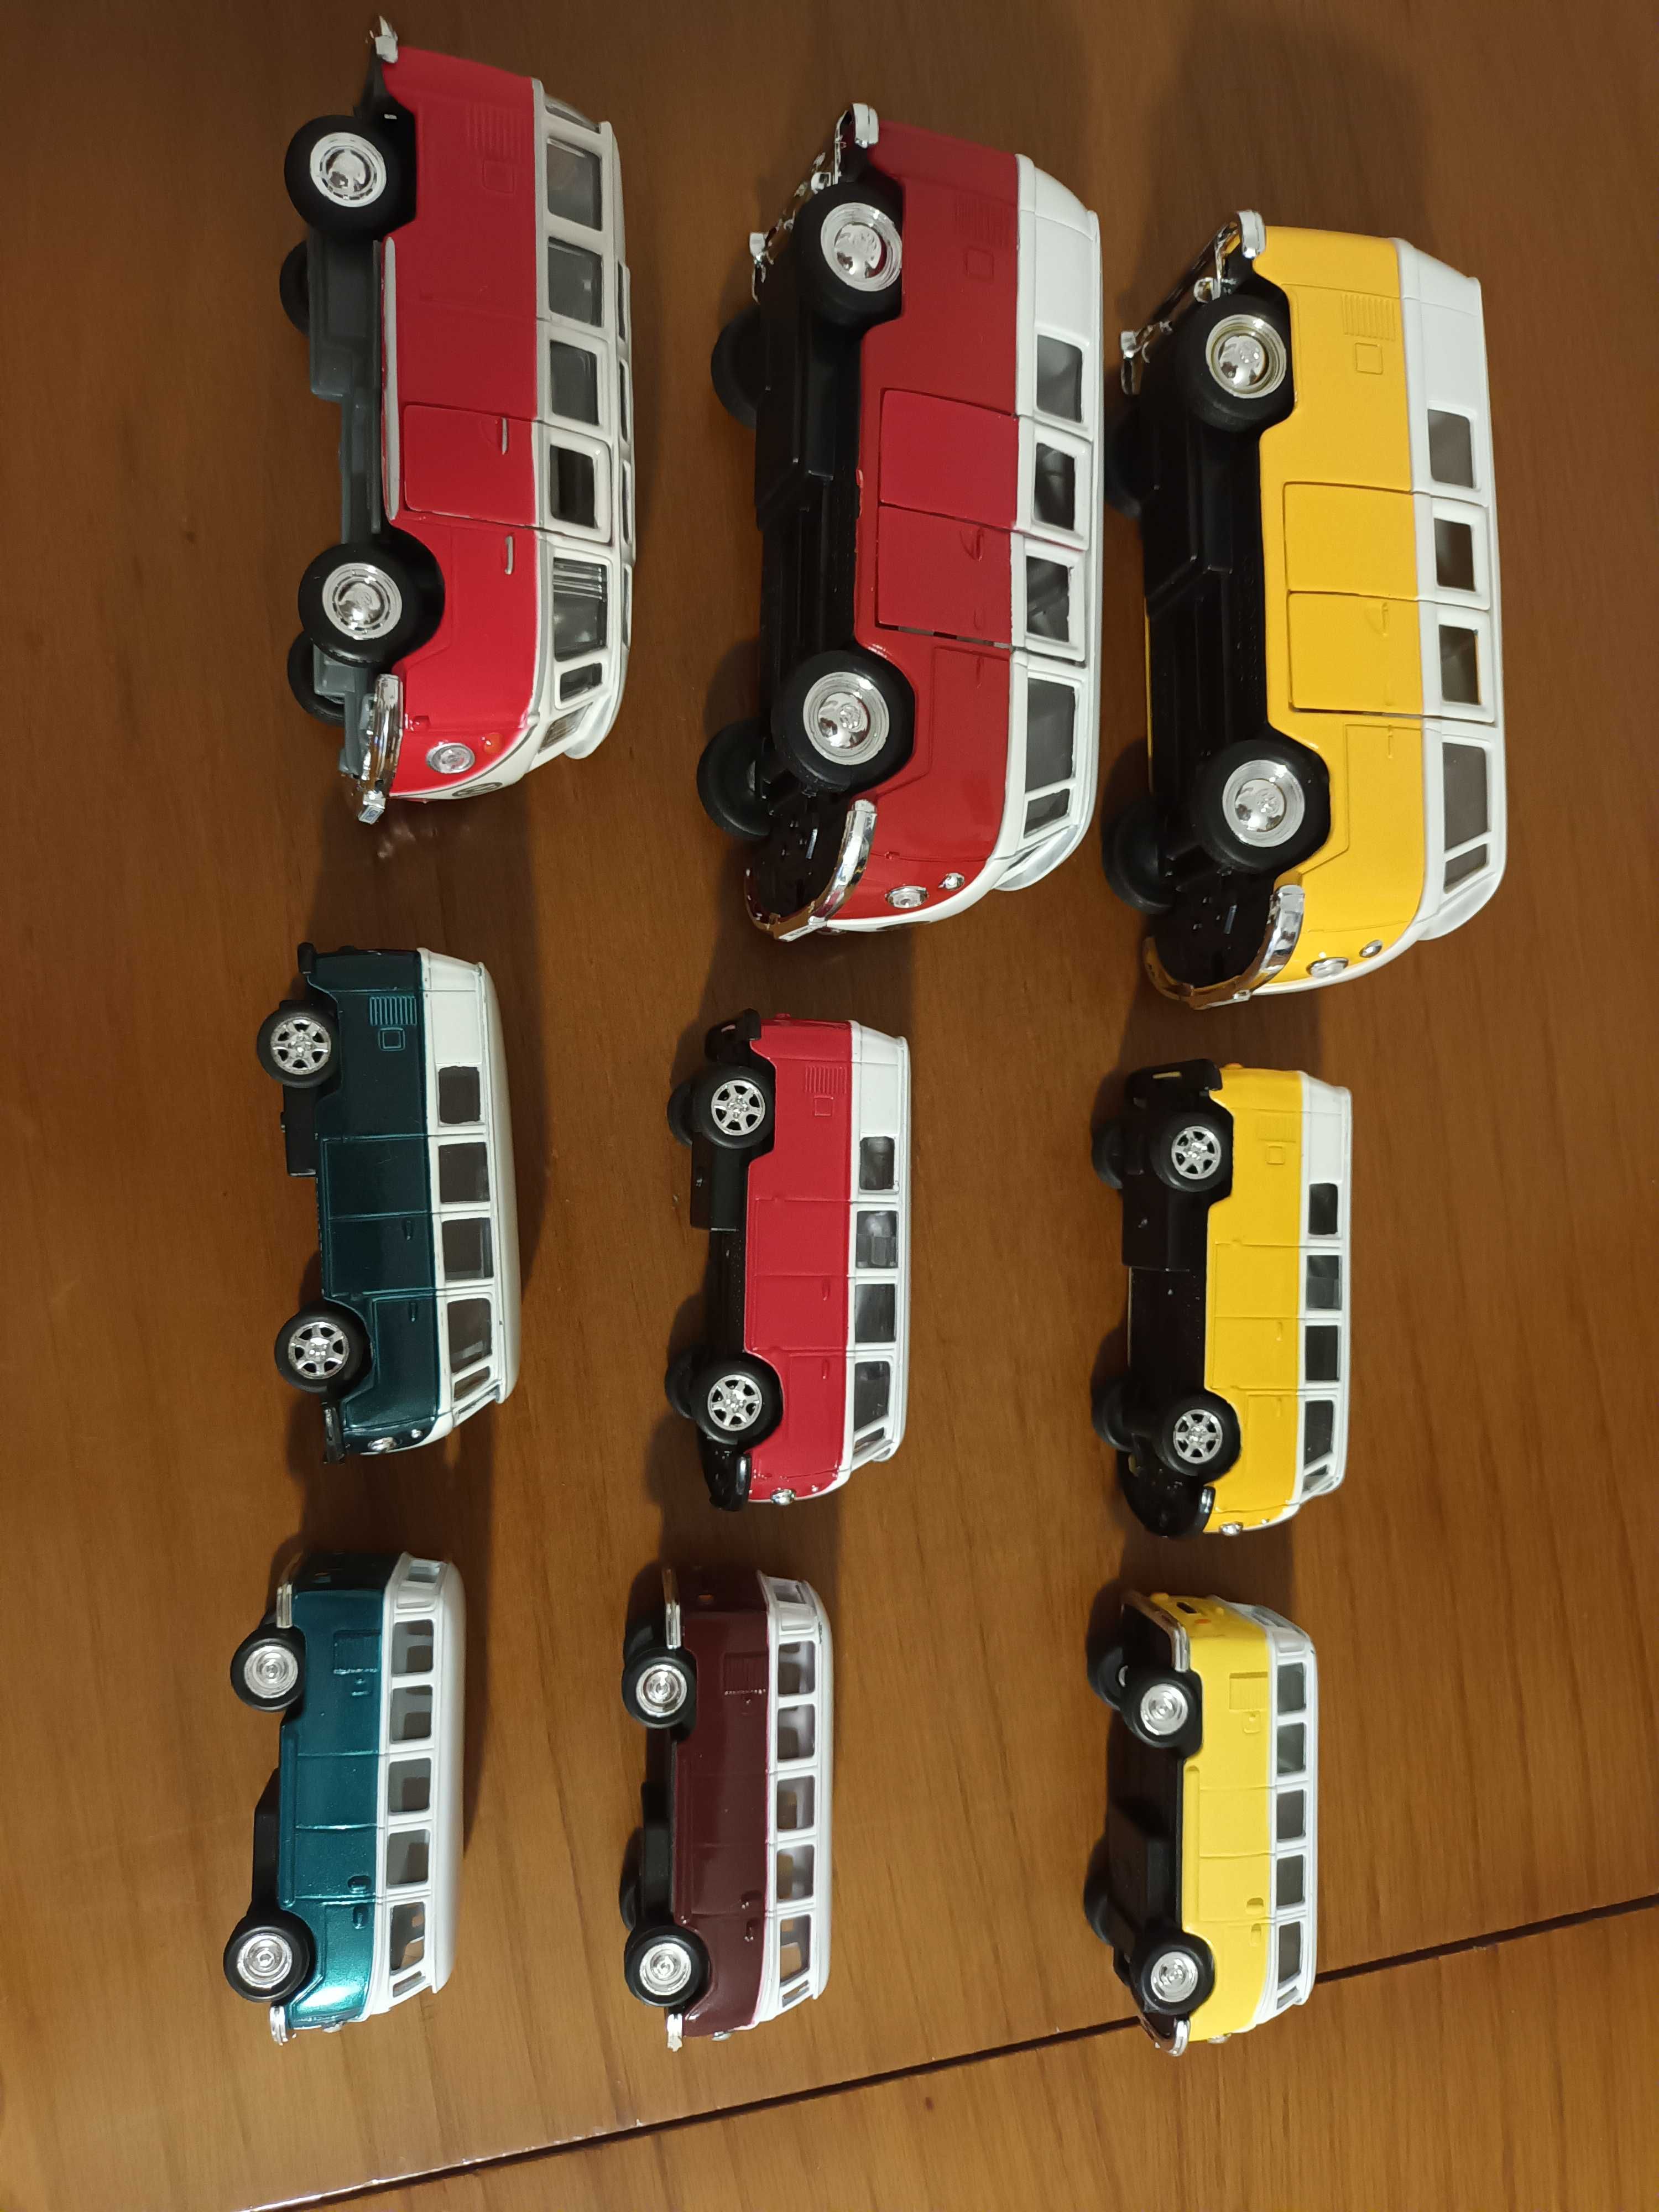 Carrinhas Volkswagen chamadas pão de forma em diferentes escalas